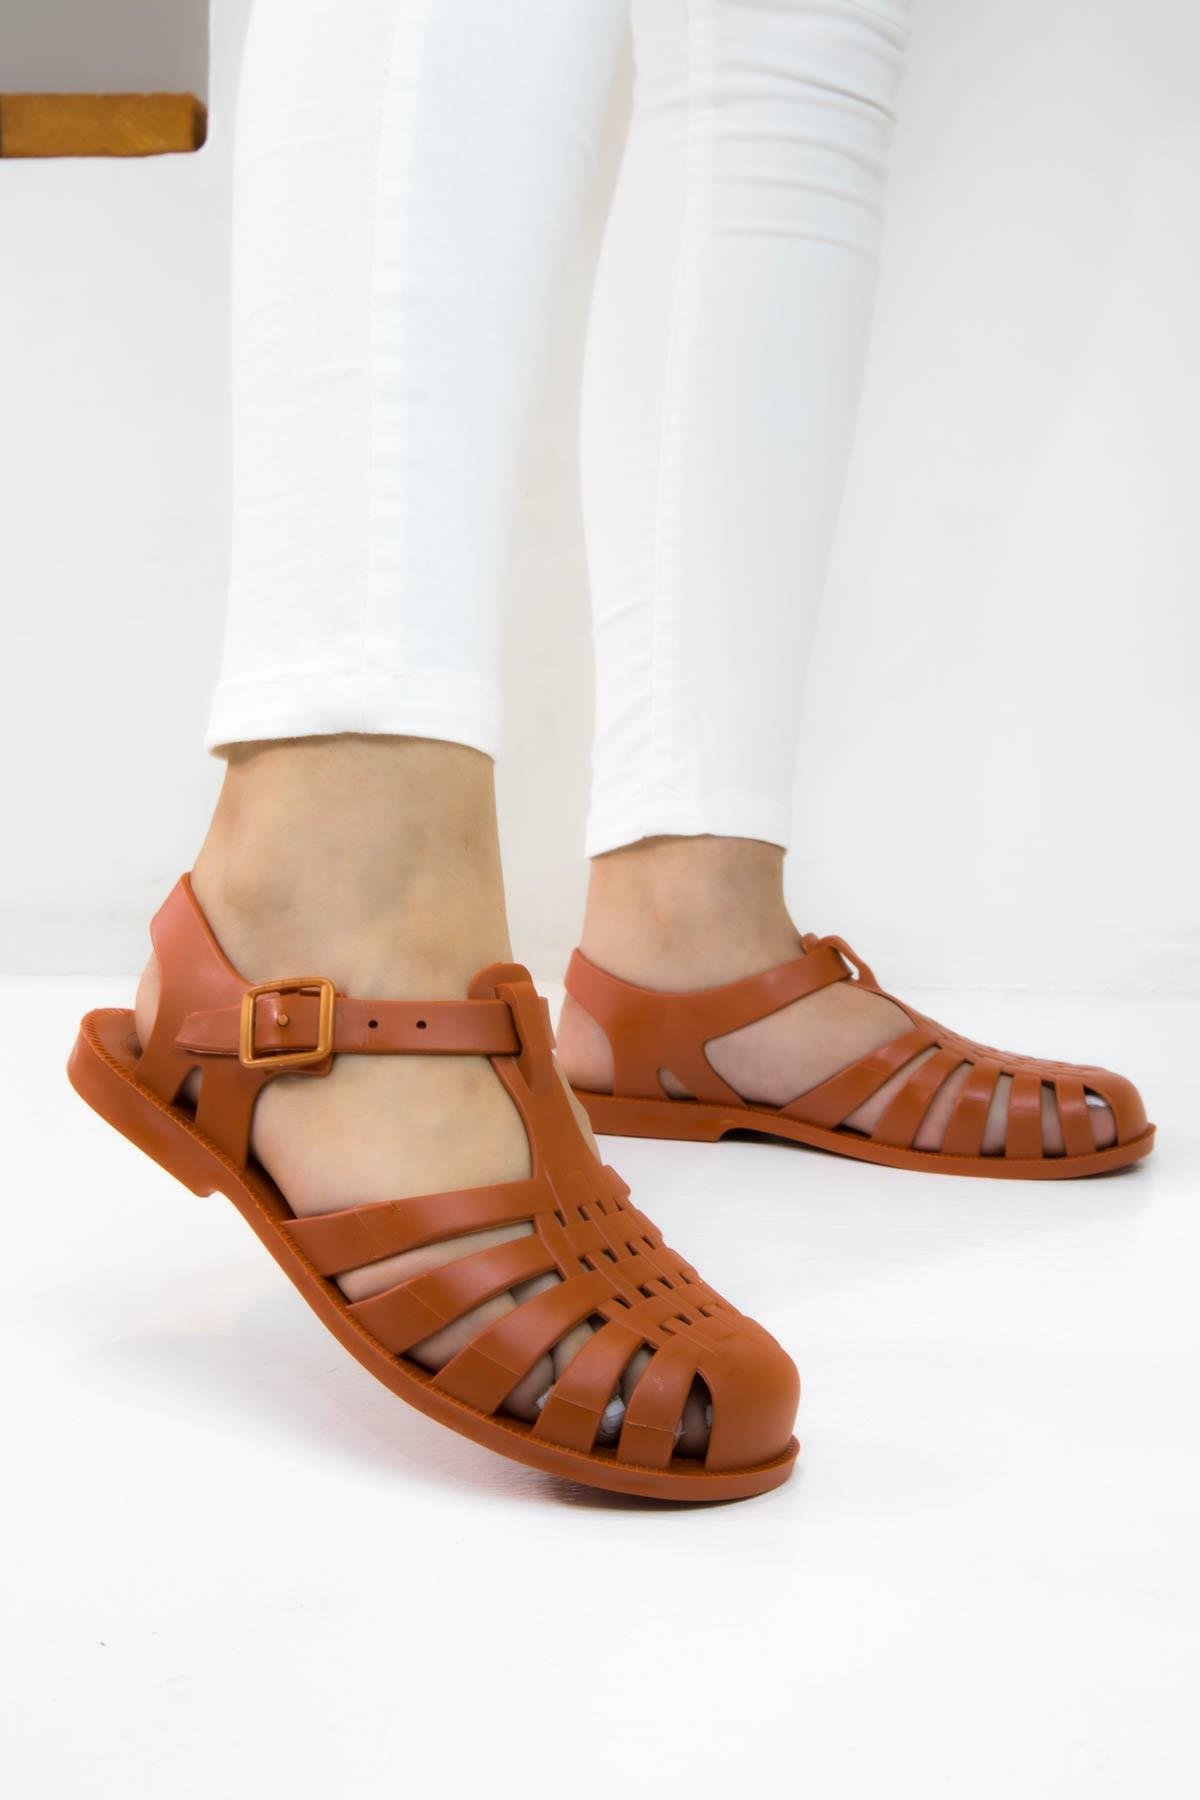 Sermoda Yumuşak Plastik Deniz Ayakkabısı Kadın Sandalet Kiremit